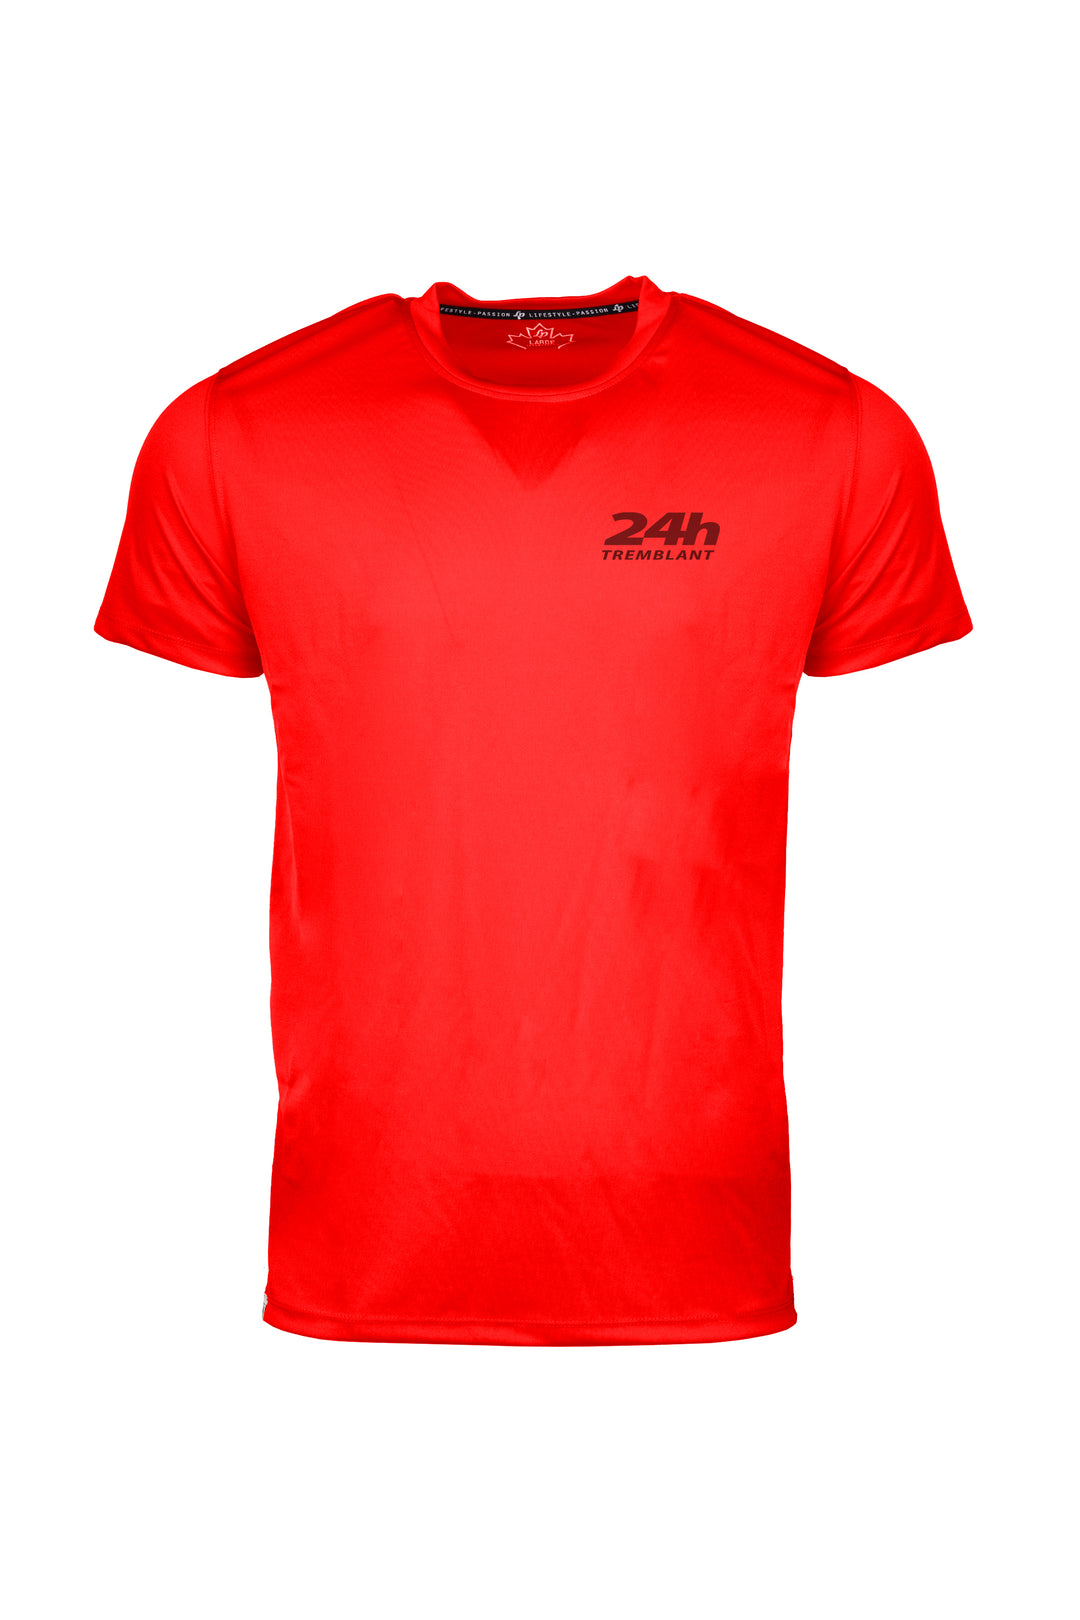 T-shirts sportif - 24h Tremblant avec nom d'équipe personnalisable [Rouge]